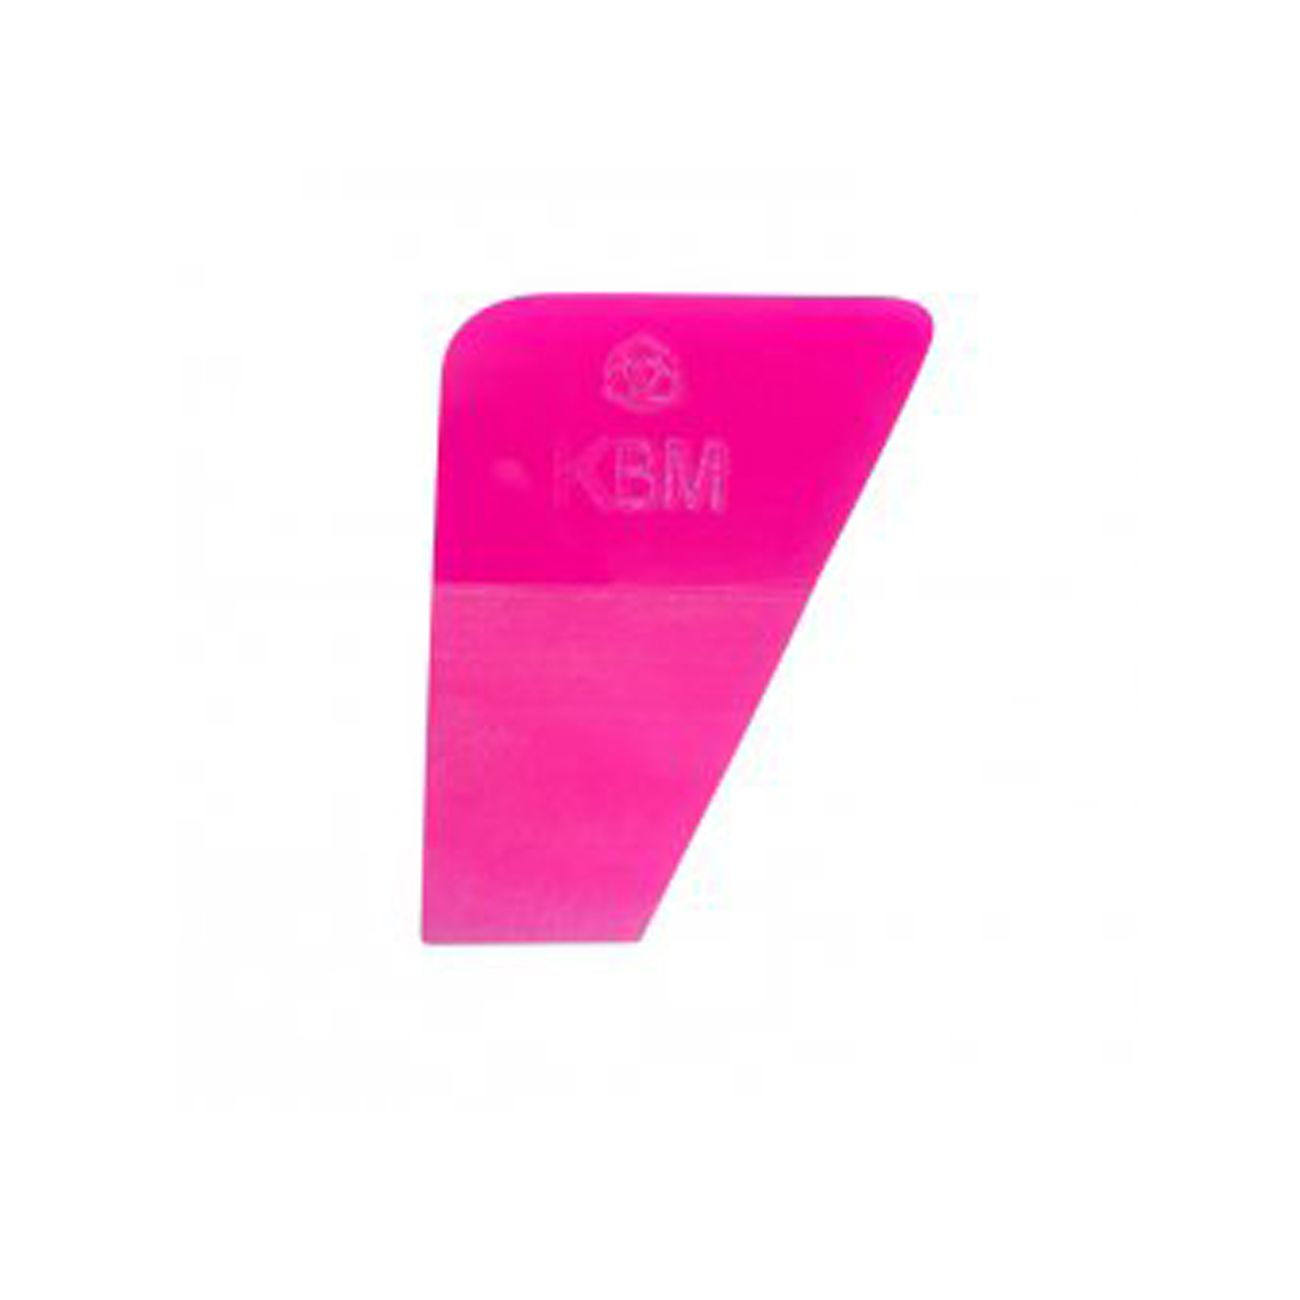 Выгонка KVM 7 полиуретановая розова 5,5 x 7,5 см